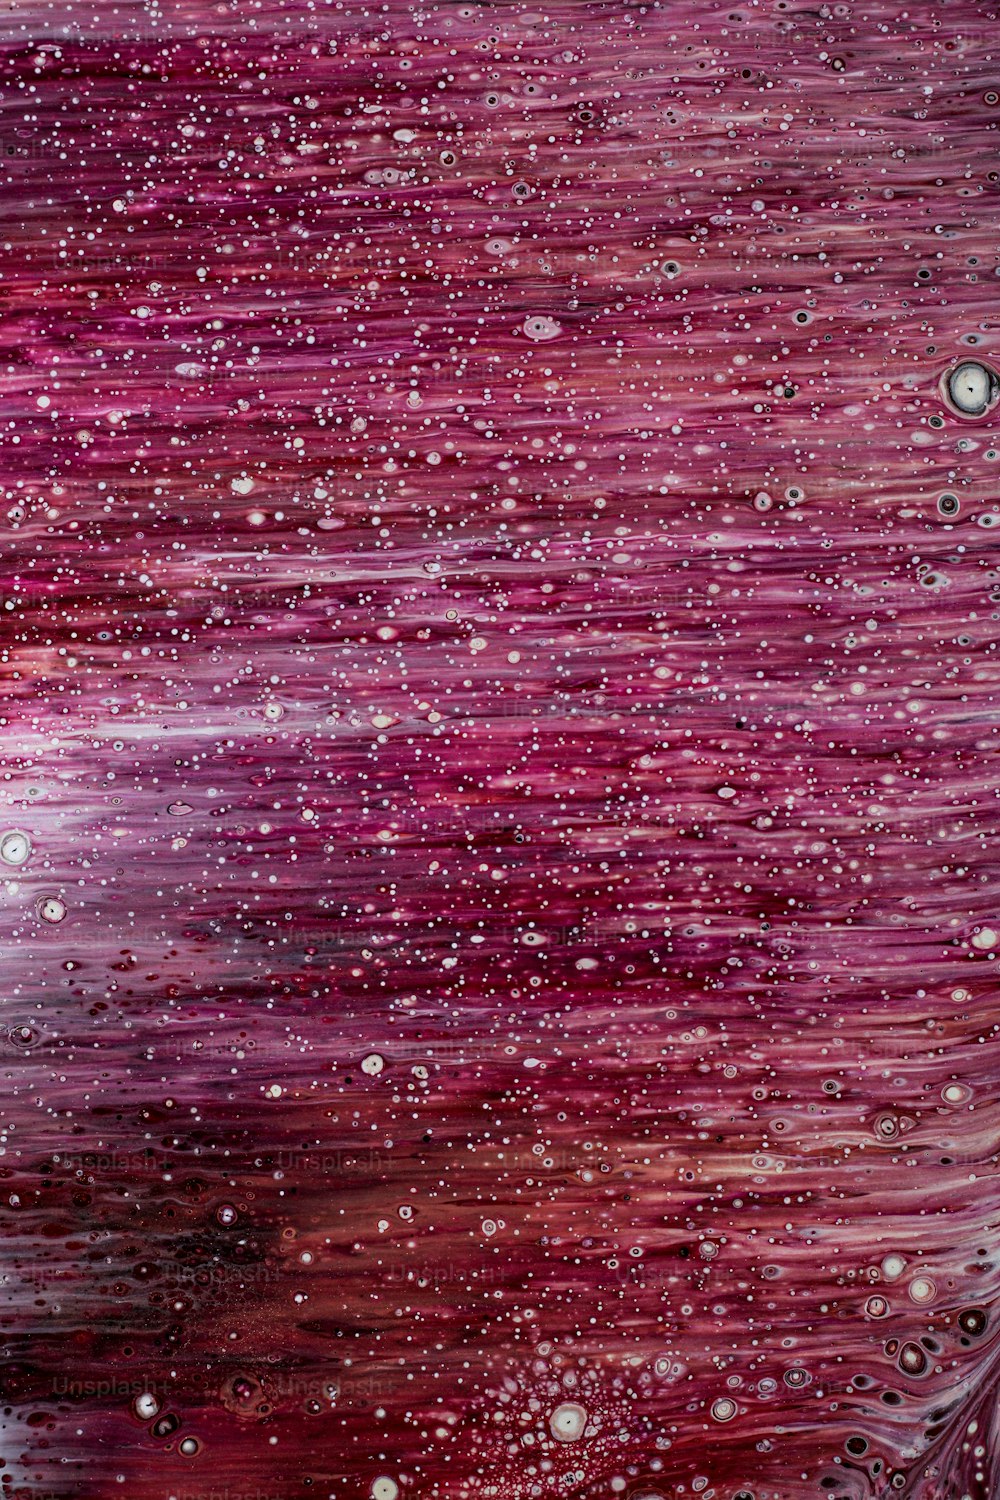 Una pintura de gotas de agua sobre un fondo púrpura